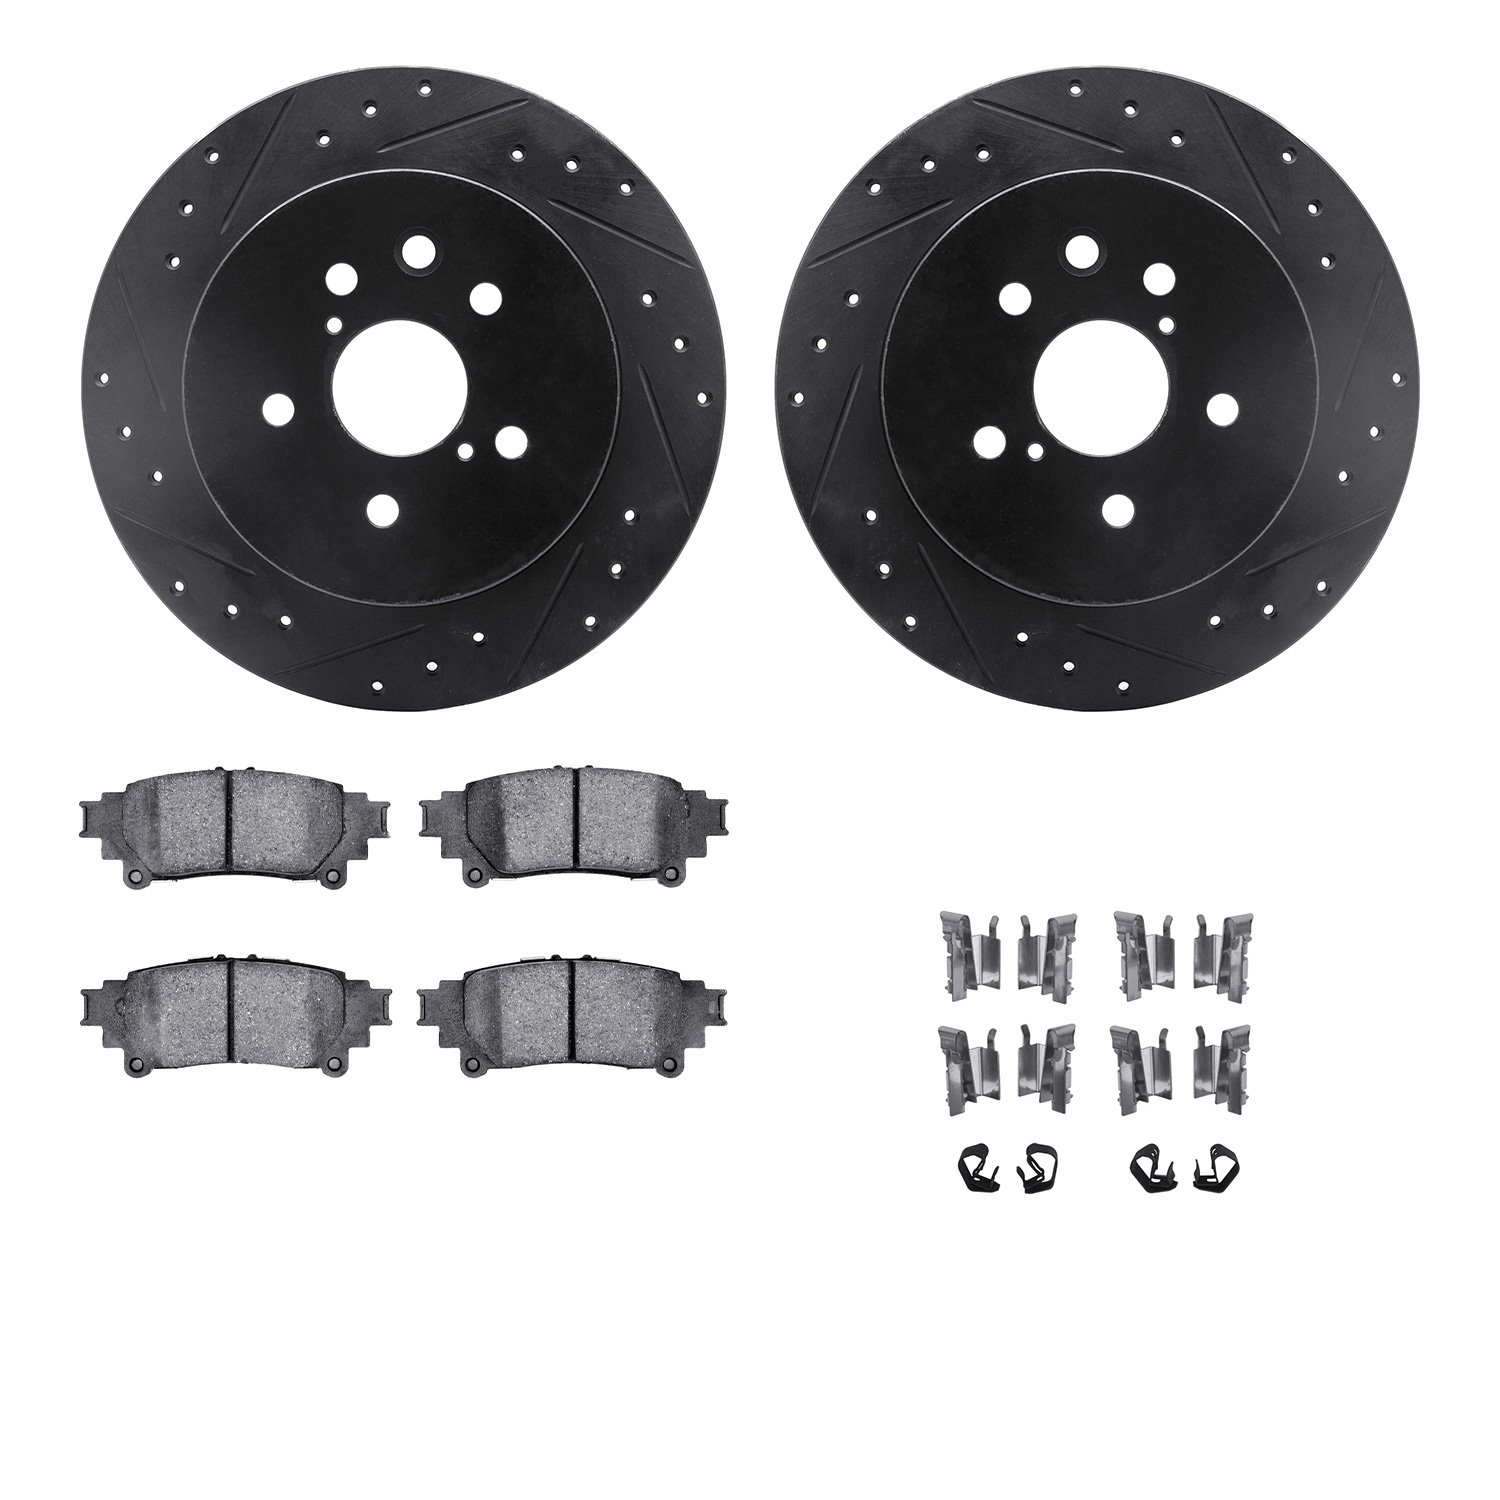 8312-75030 Drilled/Slotted Brake Rotors with 3000-Series Ceramic Brake Pads Kit & Hardware [Black], 2014-2015 Lexus/Toyota/Scion